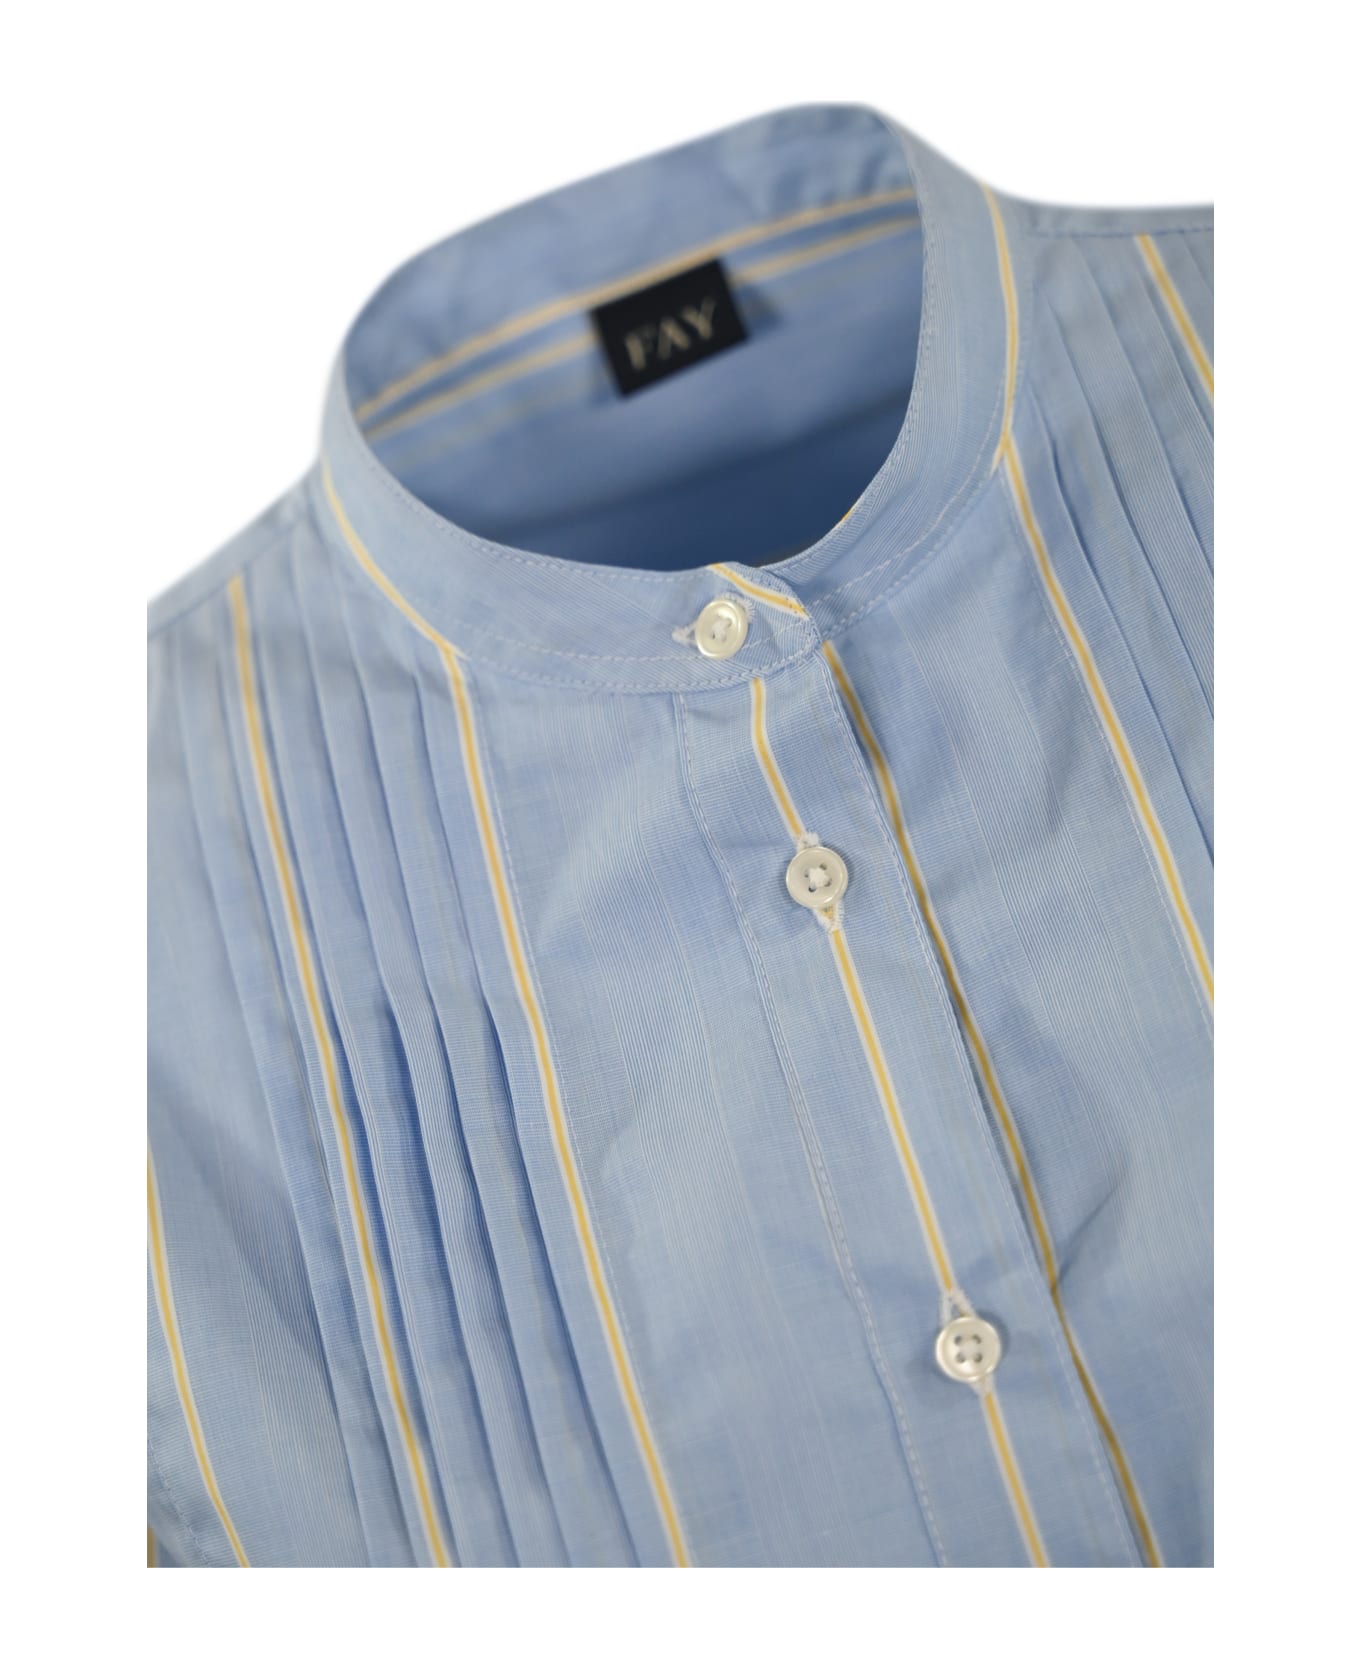 Fay Poepelin Shirt With Mandarin Collar - (azzurro)+(miele)